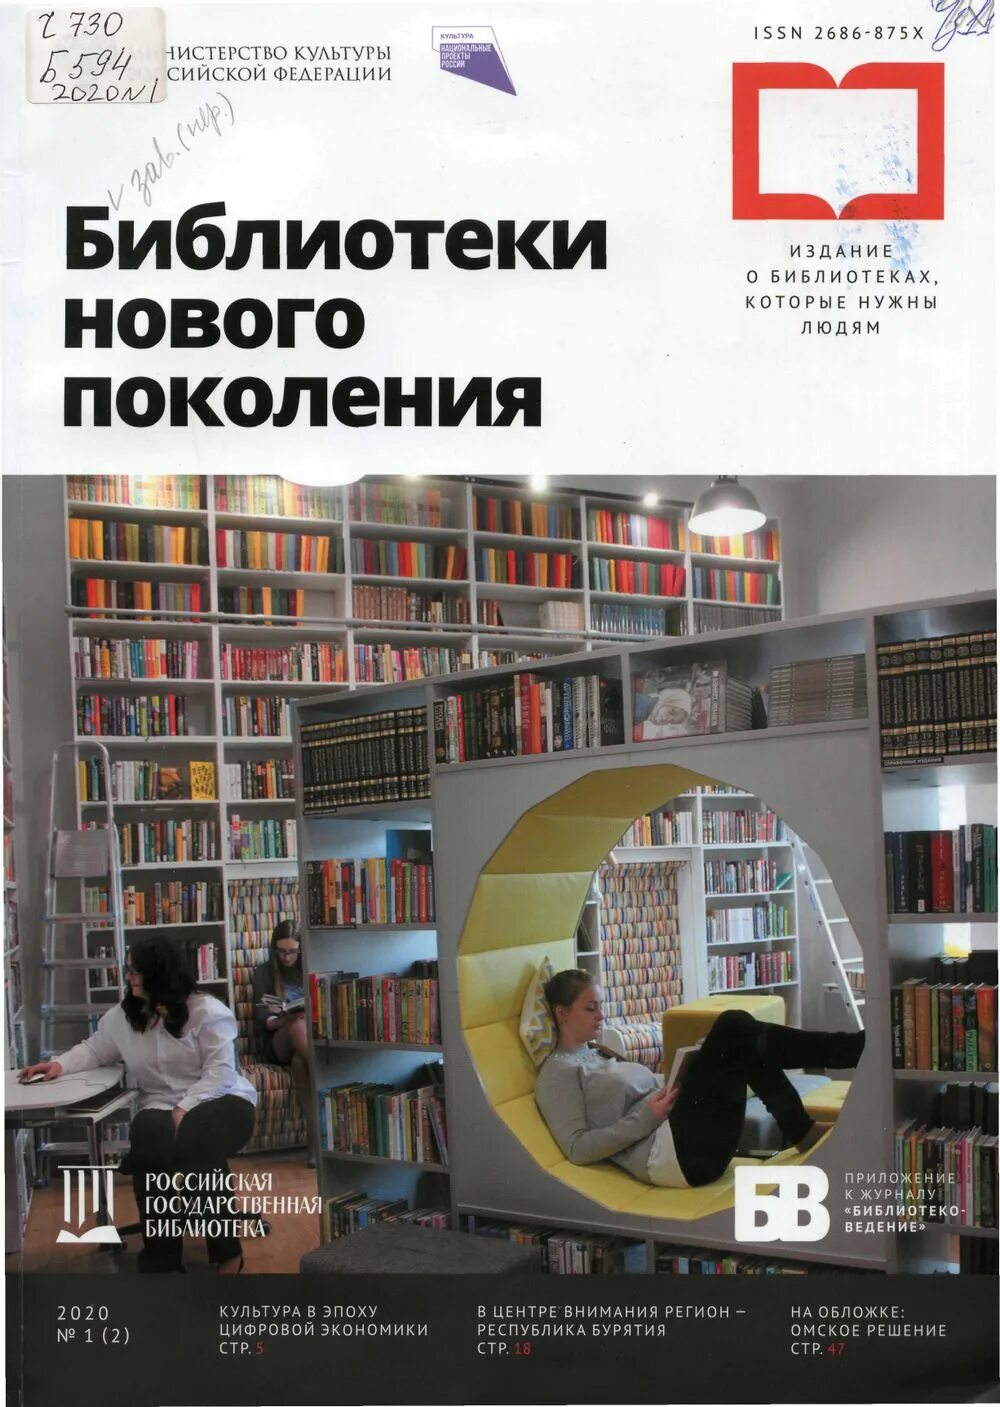 Библиотека нового поколения. Модельная библиотека. Модельная библиотека нового поколения.